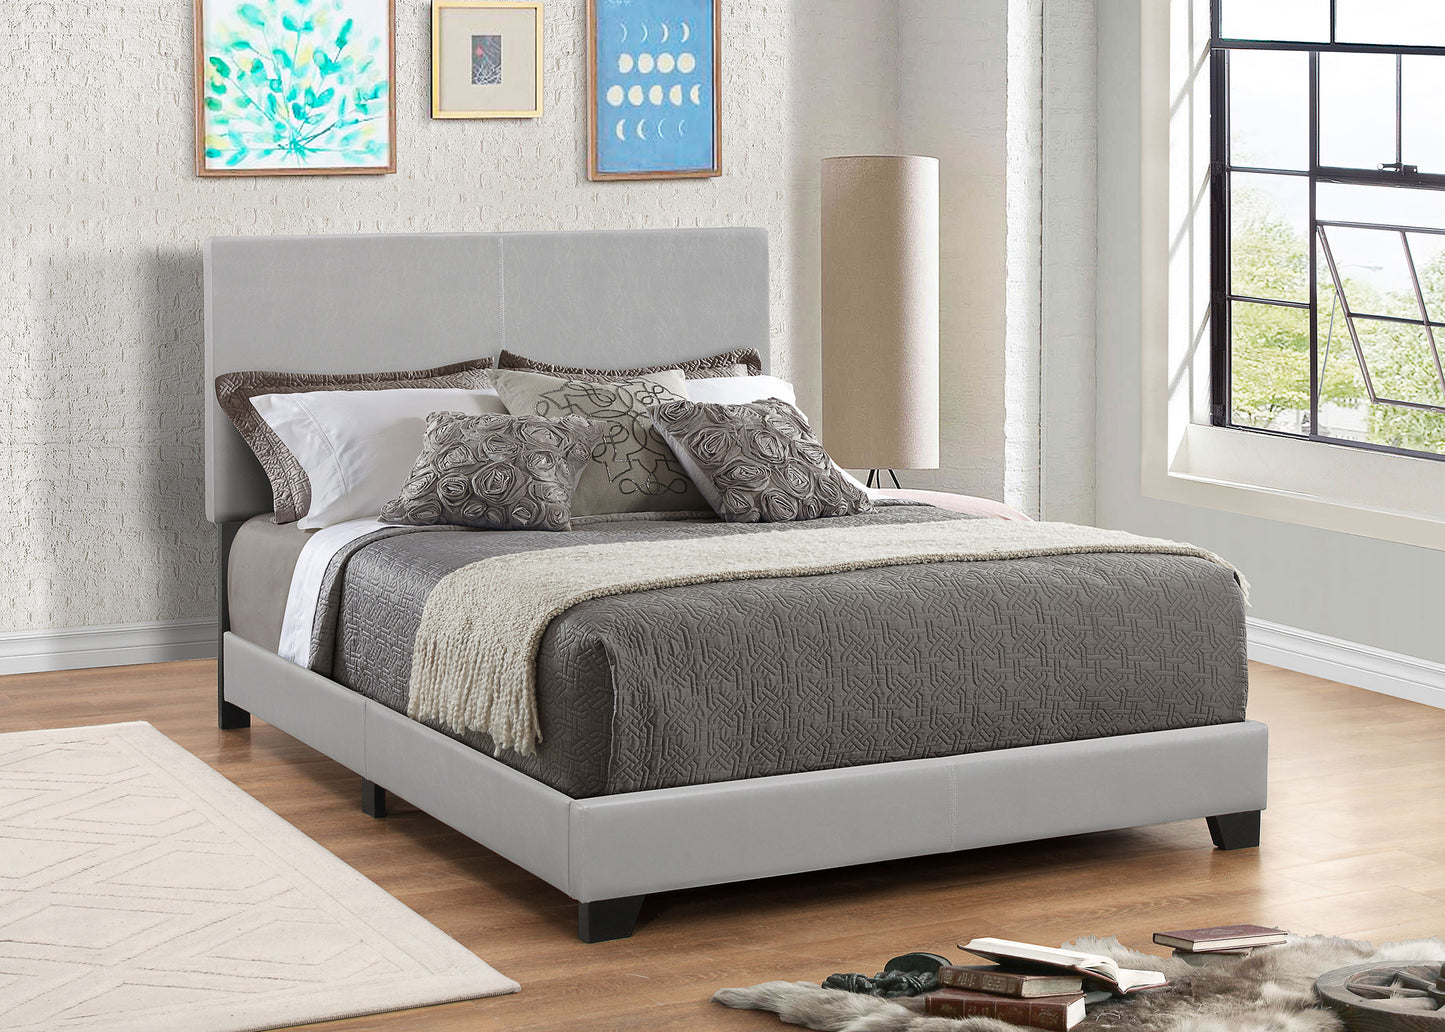 Dorian Upholstered Full Panel Bed Grey